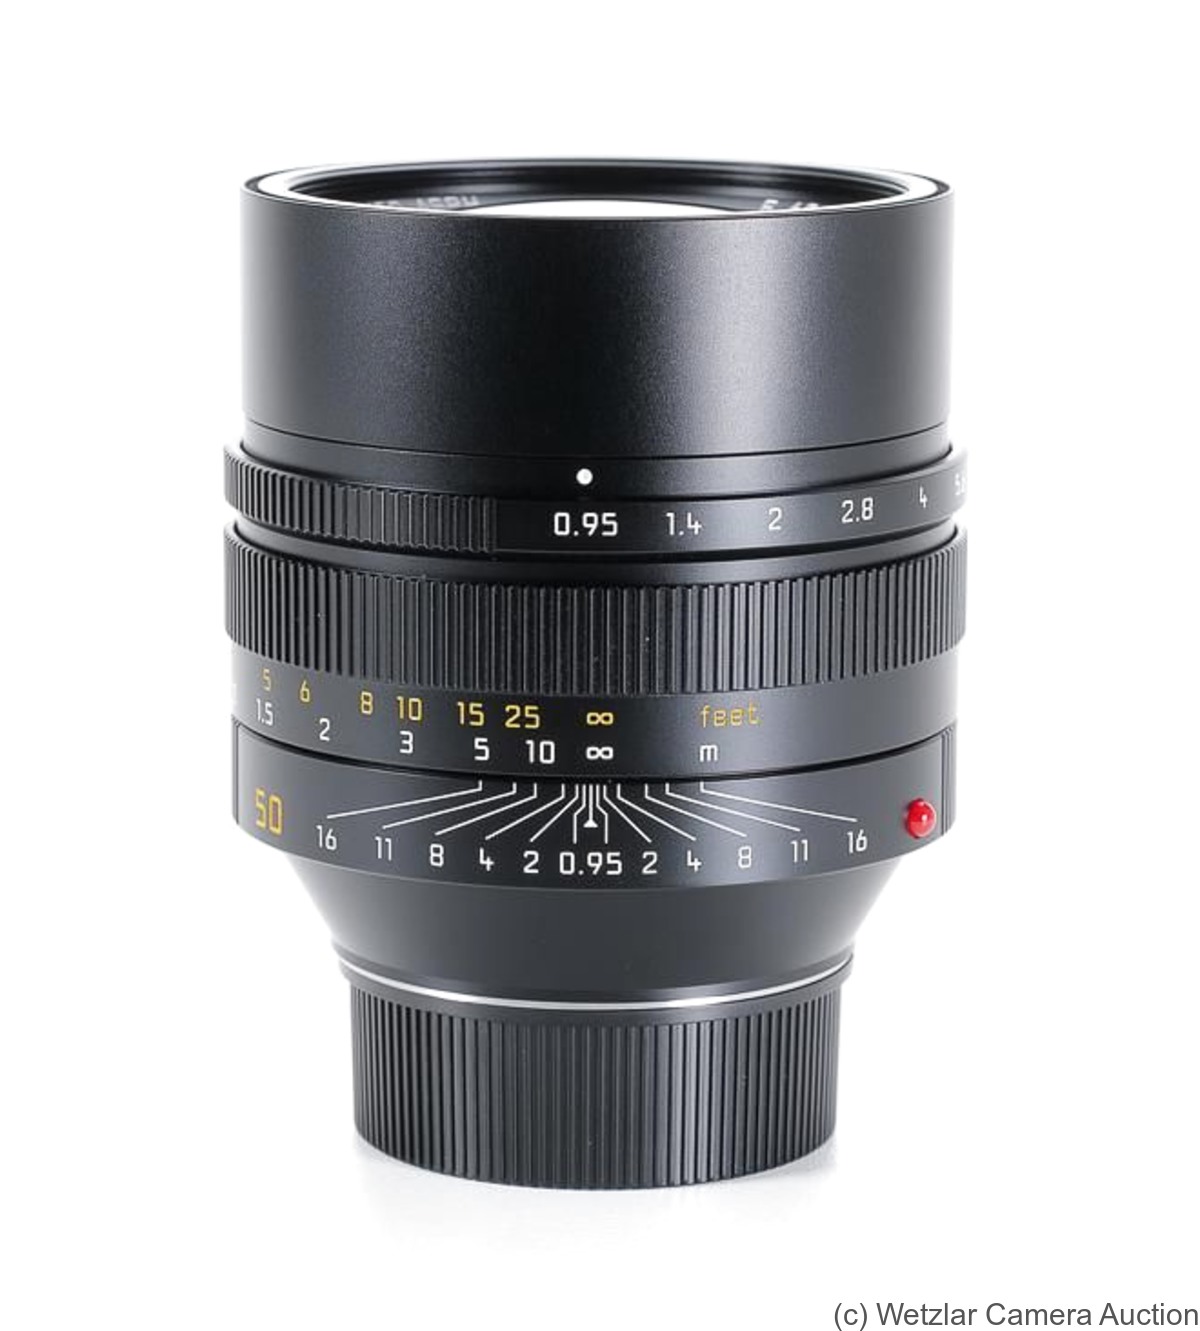 Leitz: 50mm (5cm) f0.95 Noctilux-M ASPH (BM) camera